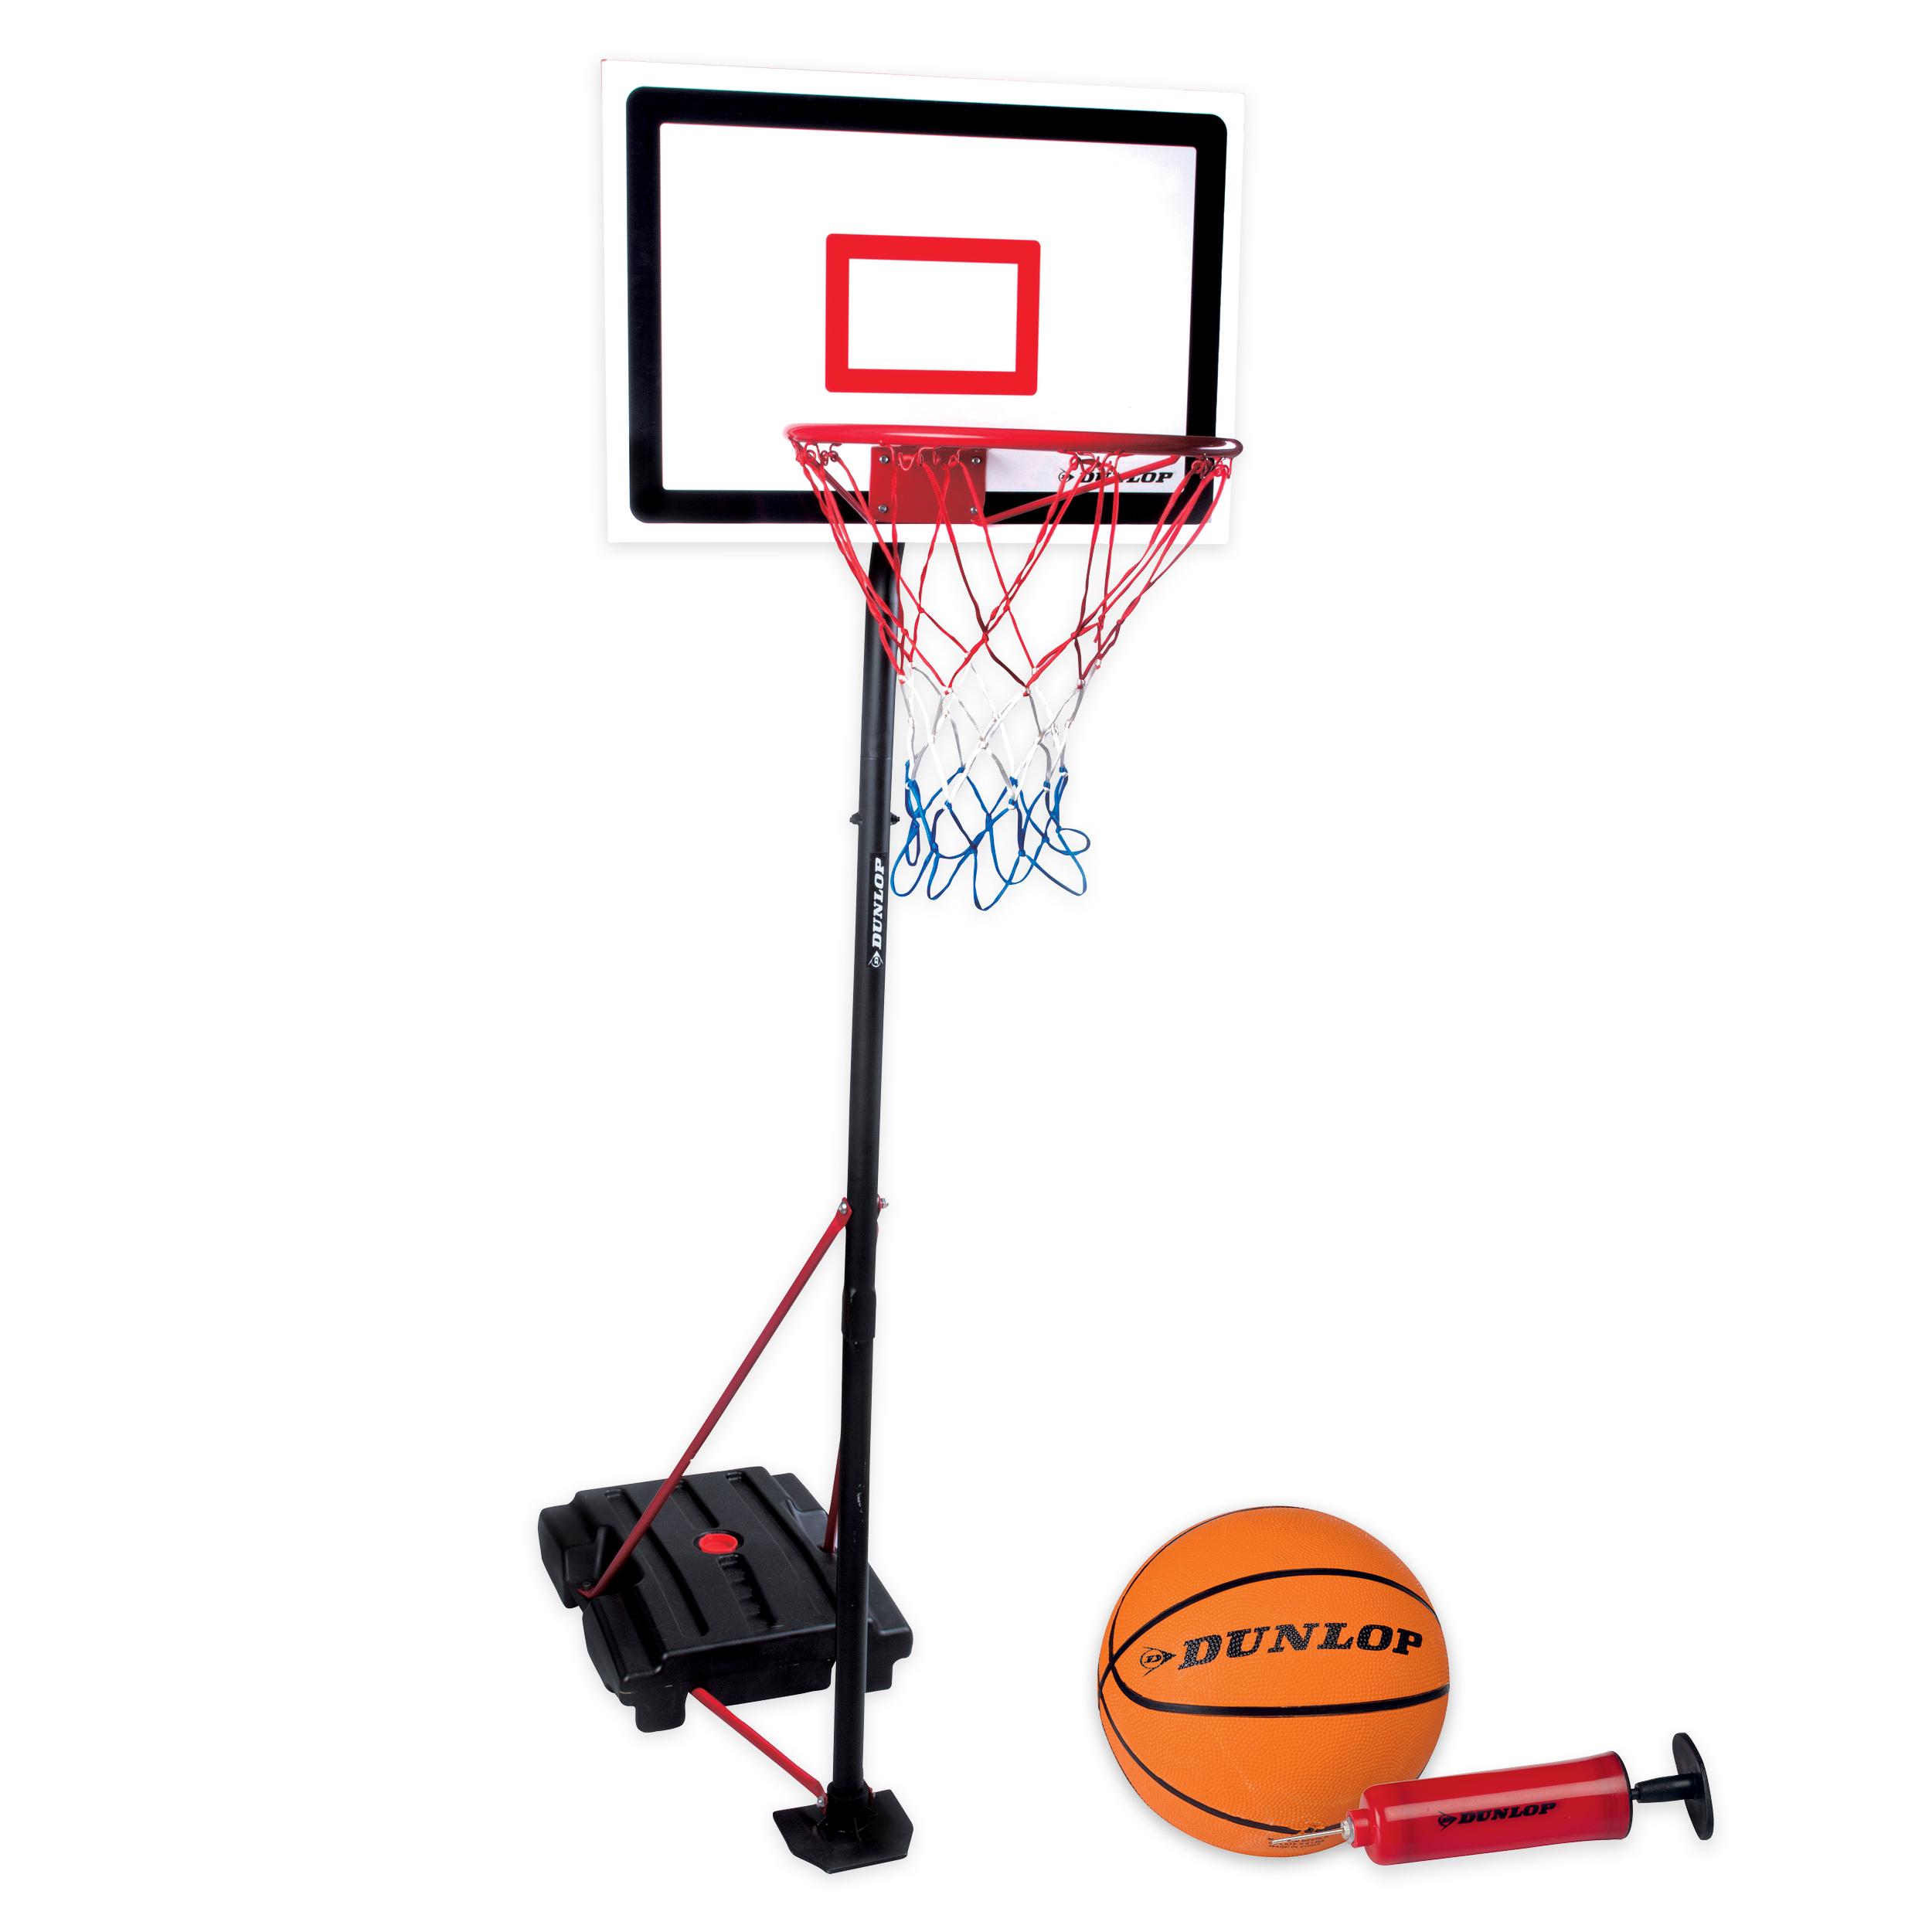 Dunlop Basketbalset - Speelset Junior - In Hoogte Verstelbaar: 165 - 205 cm - Basketbal standaard, bal, pomp